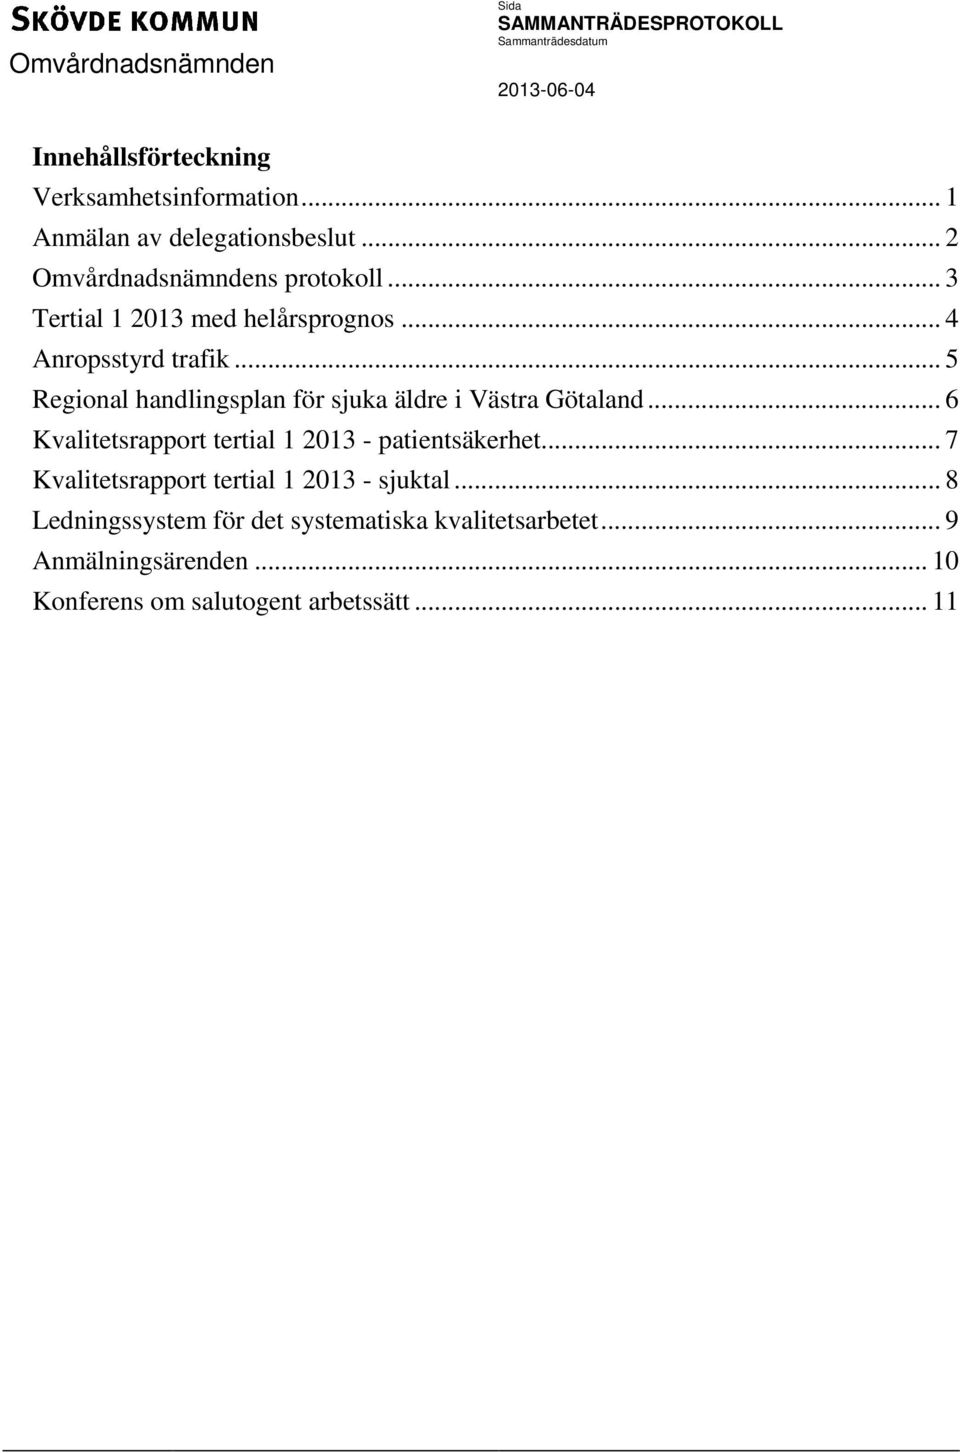 .. 5 Regional handlingsplan för sjuka äldre i Västra Götaland... 6 Kvalitetsrapport tertial 1 2013 - patientsäkerhet.